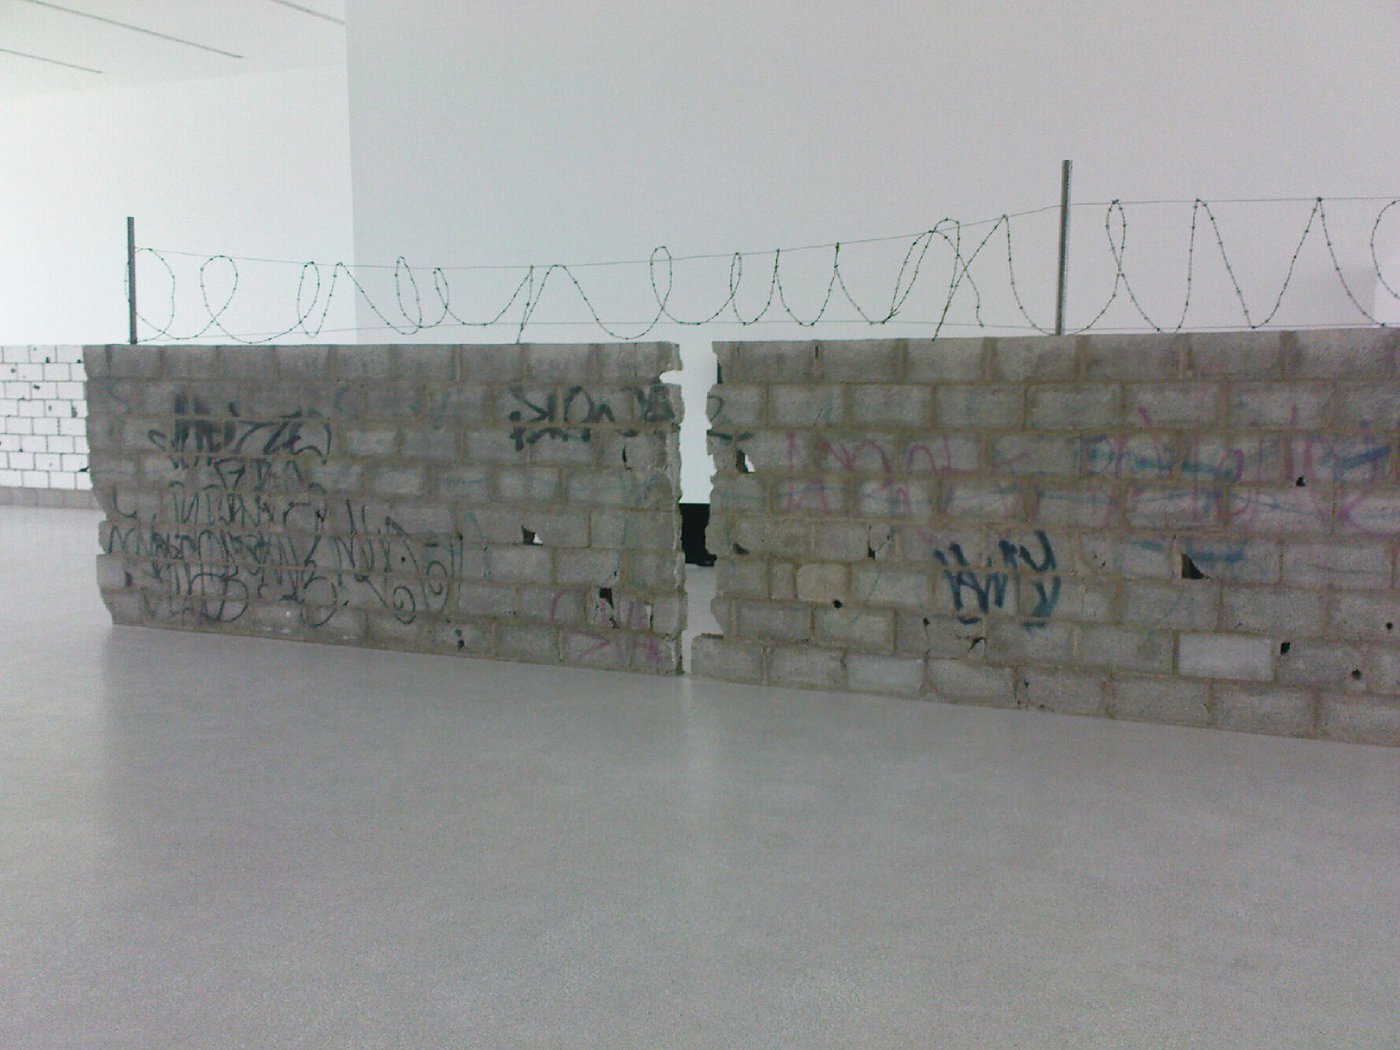 Eine in der Mitte gespaltene Mauer in einer Ausstellung. Die grauen Ziegel sind sichtbar, über die gesamte Mauer verläuft ein Stacheldrahtzaun.